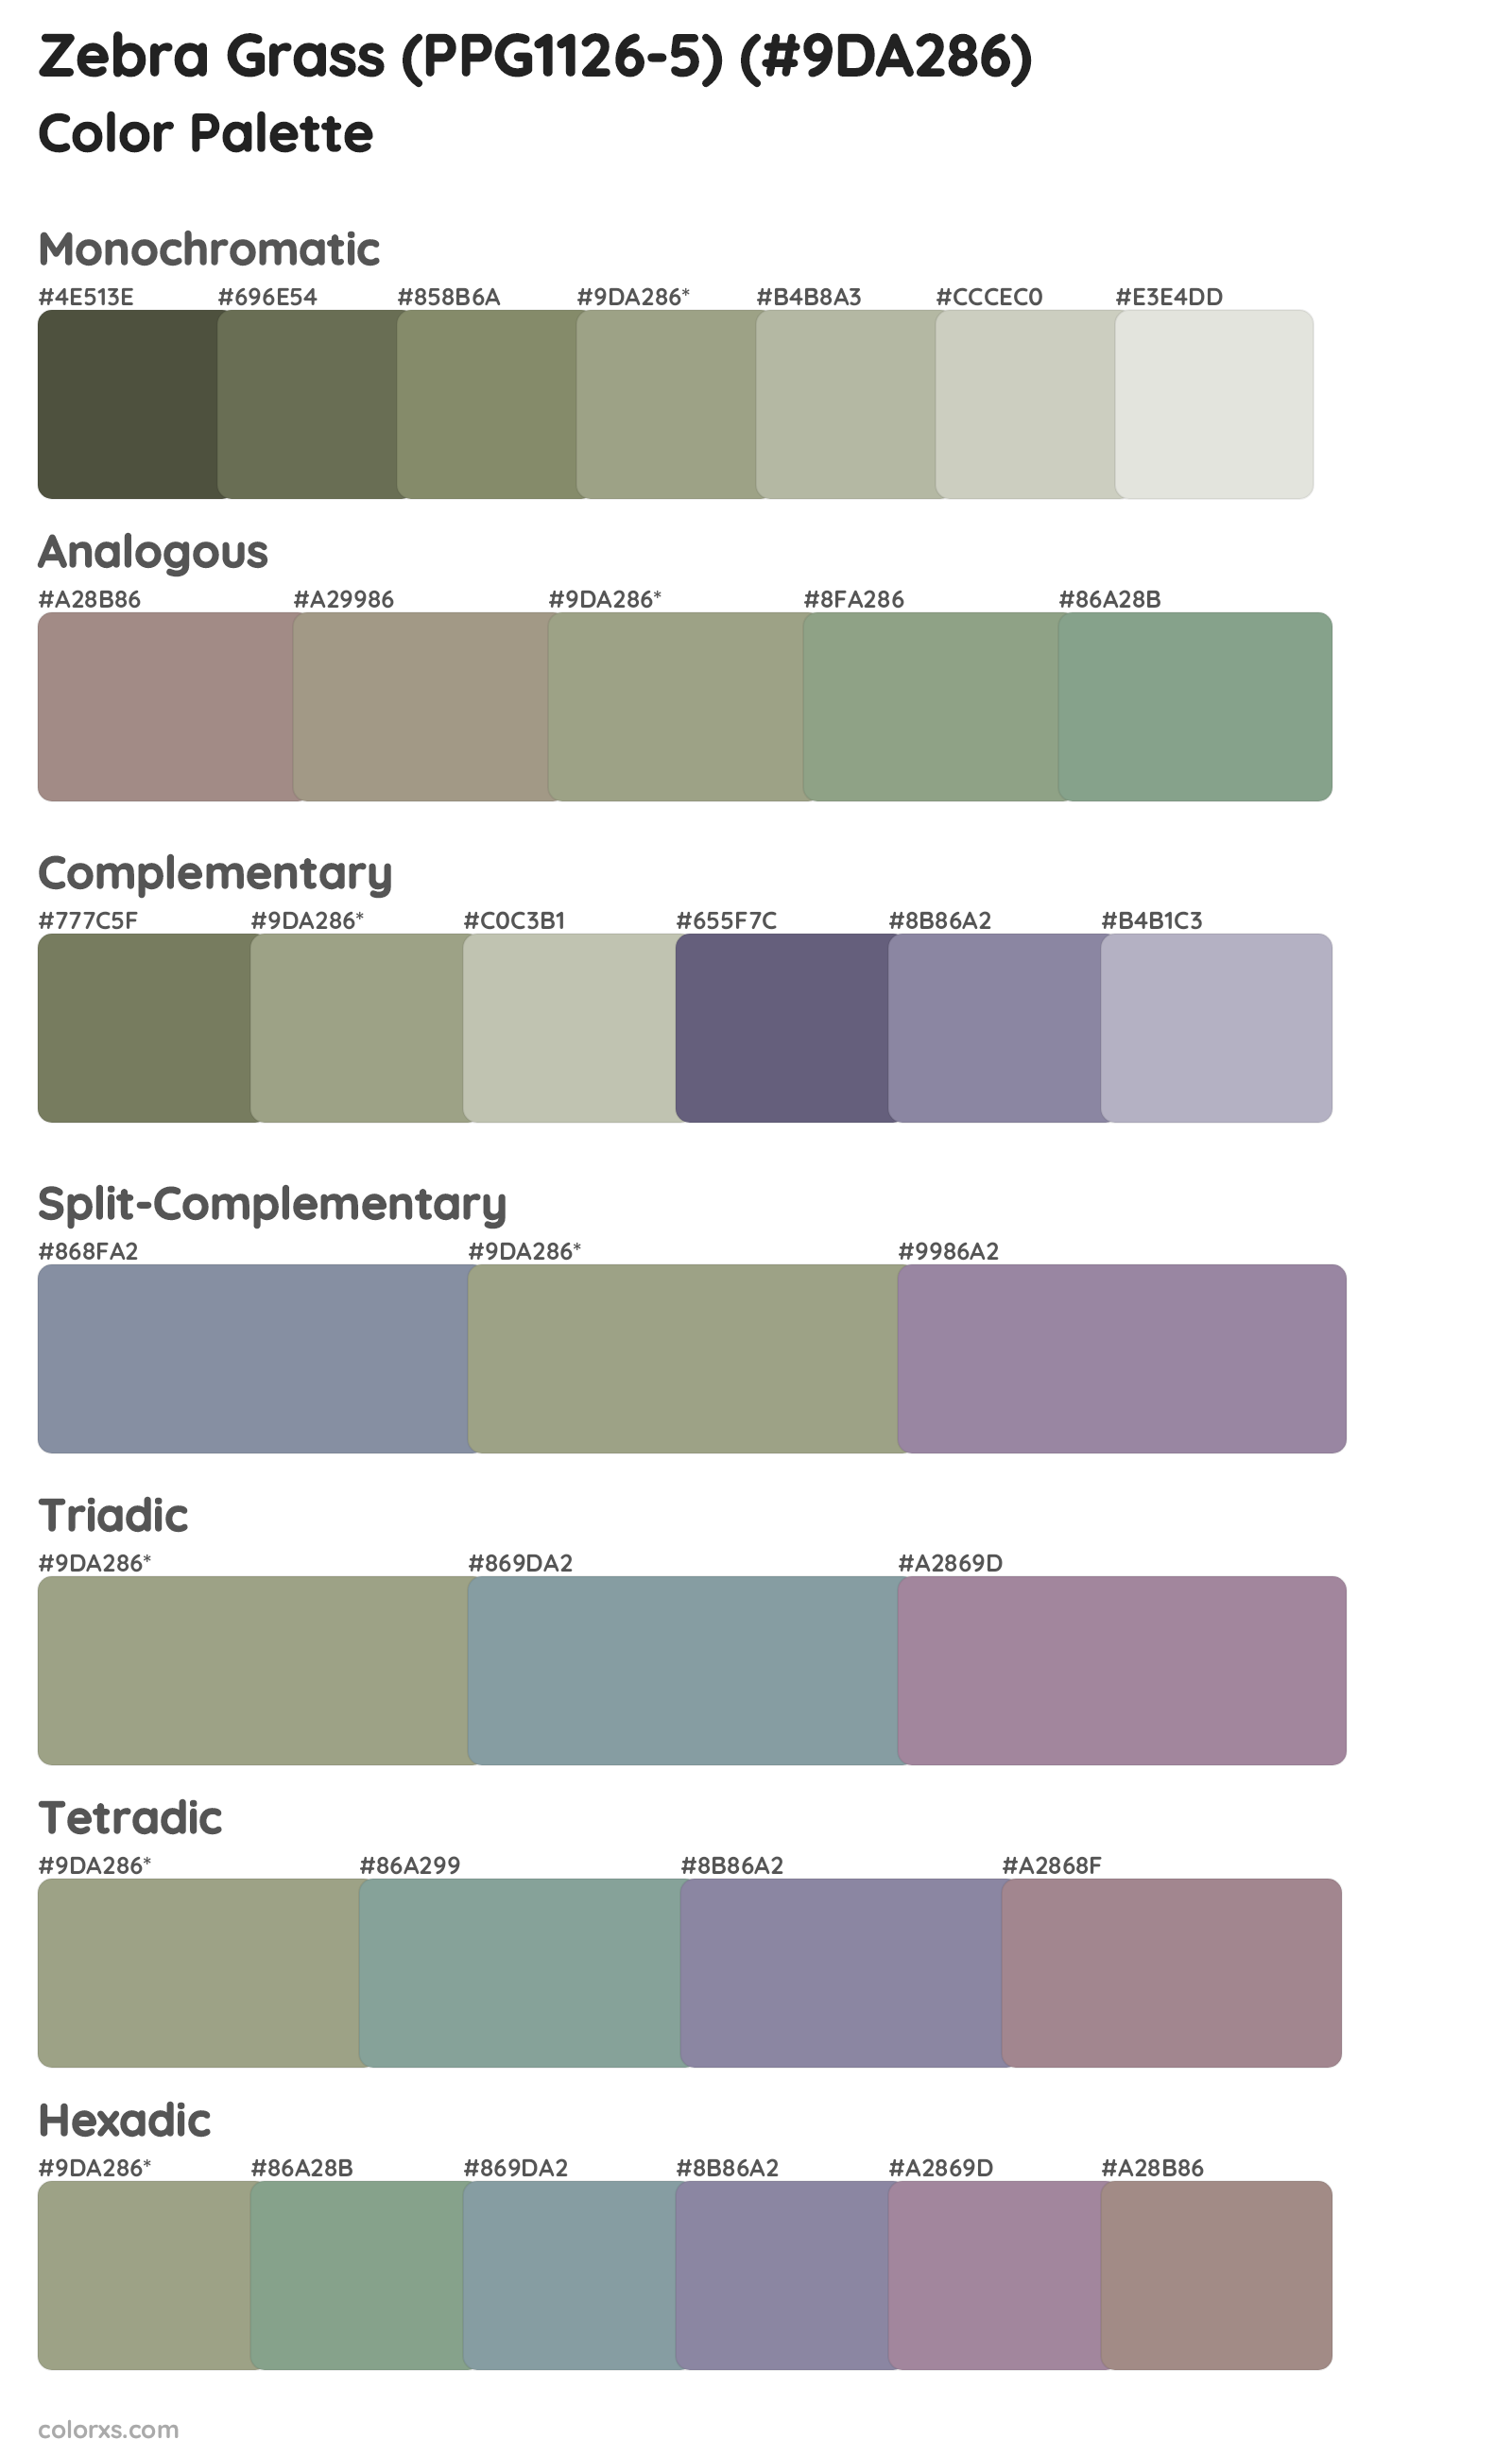 Zebra Grass (PPG1126-5) Color Scheme Palettes